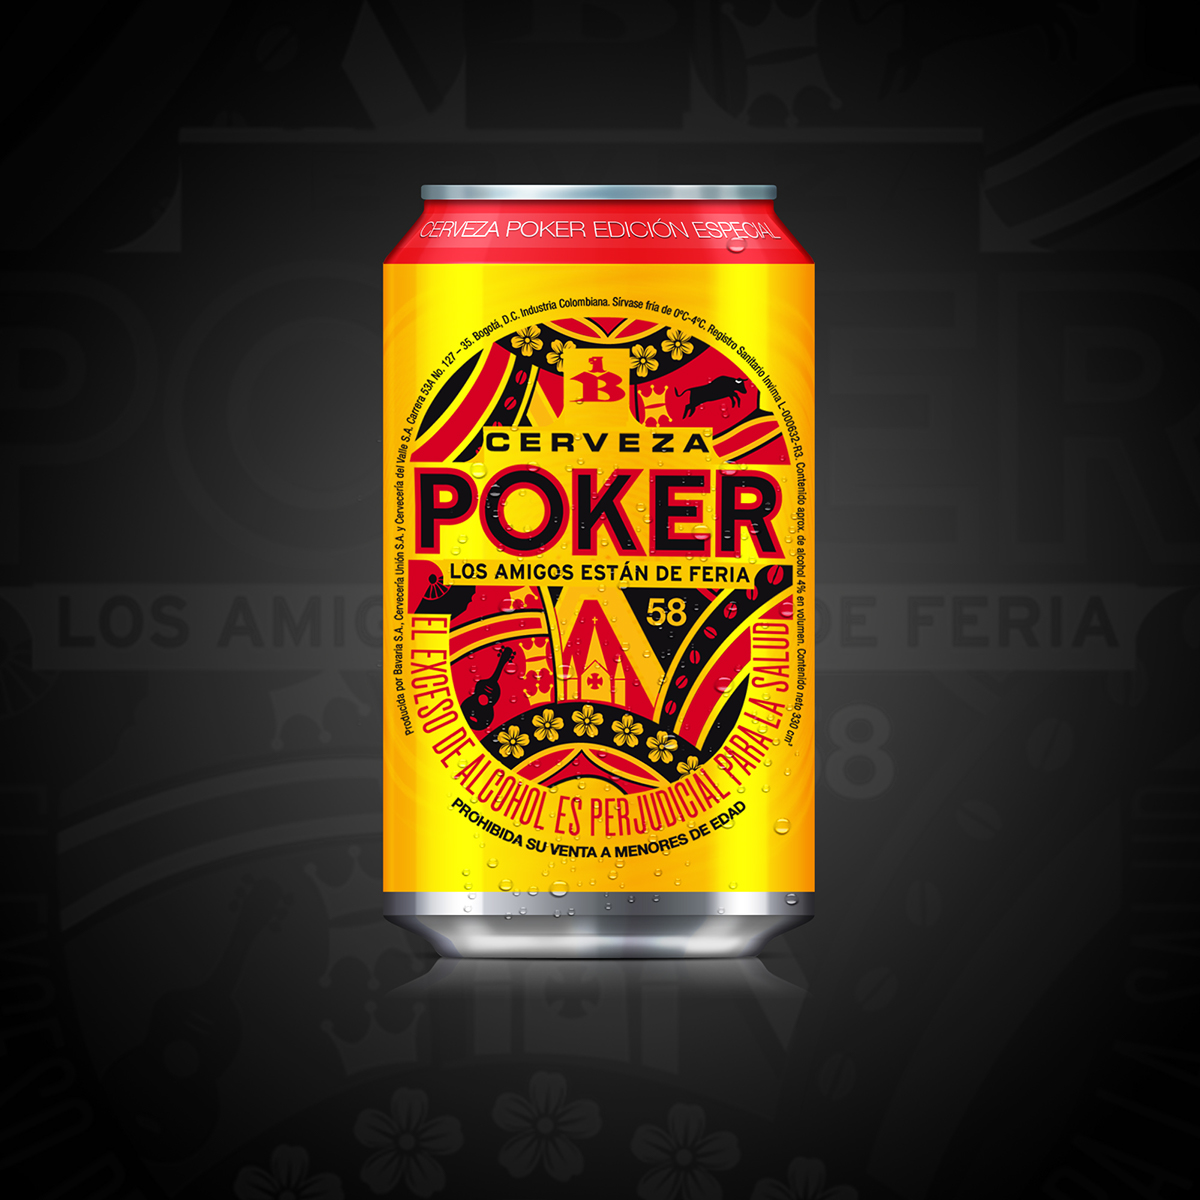 cristian camilo marin diseño visual etiqueta Label beer Poker Manizales gorotea colombia amarillo Icon cerveza yellow bottle cerveza poker